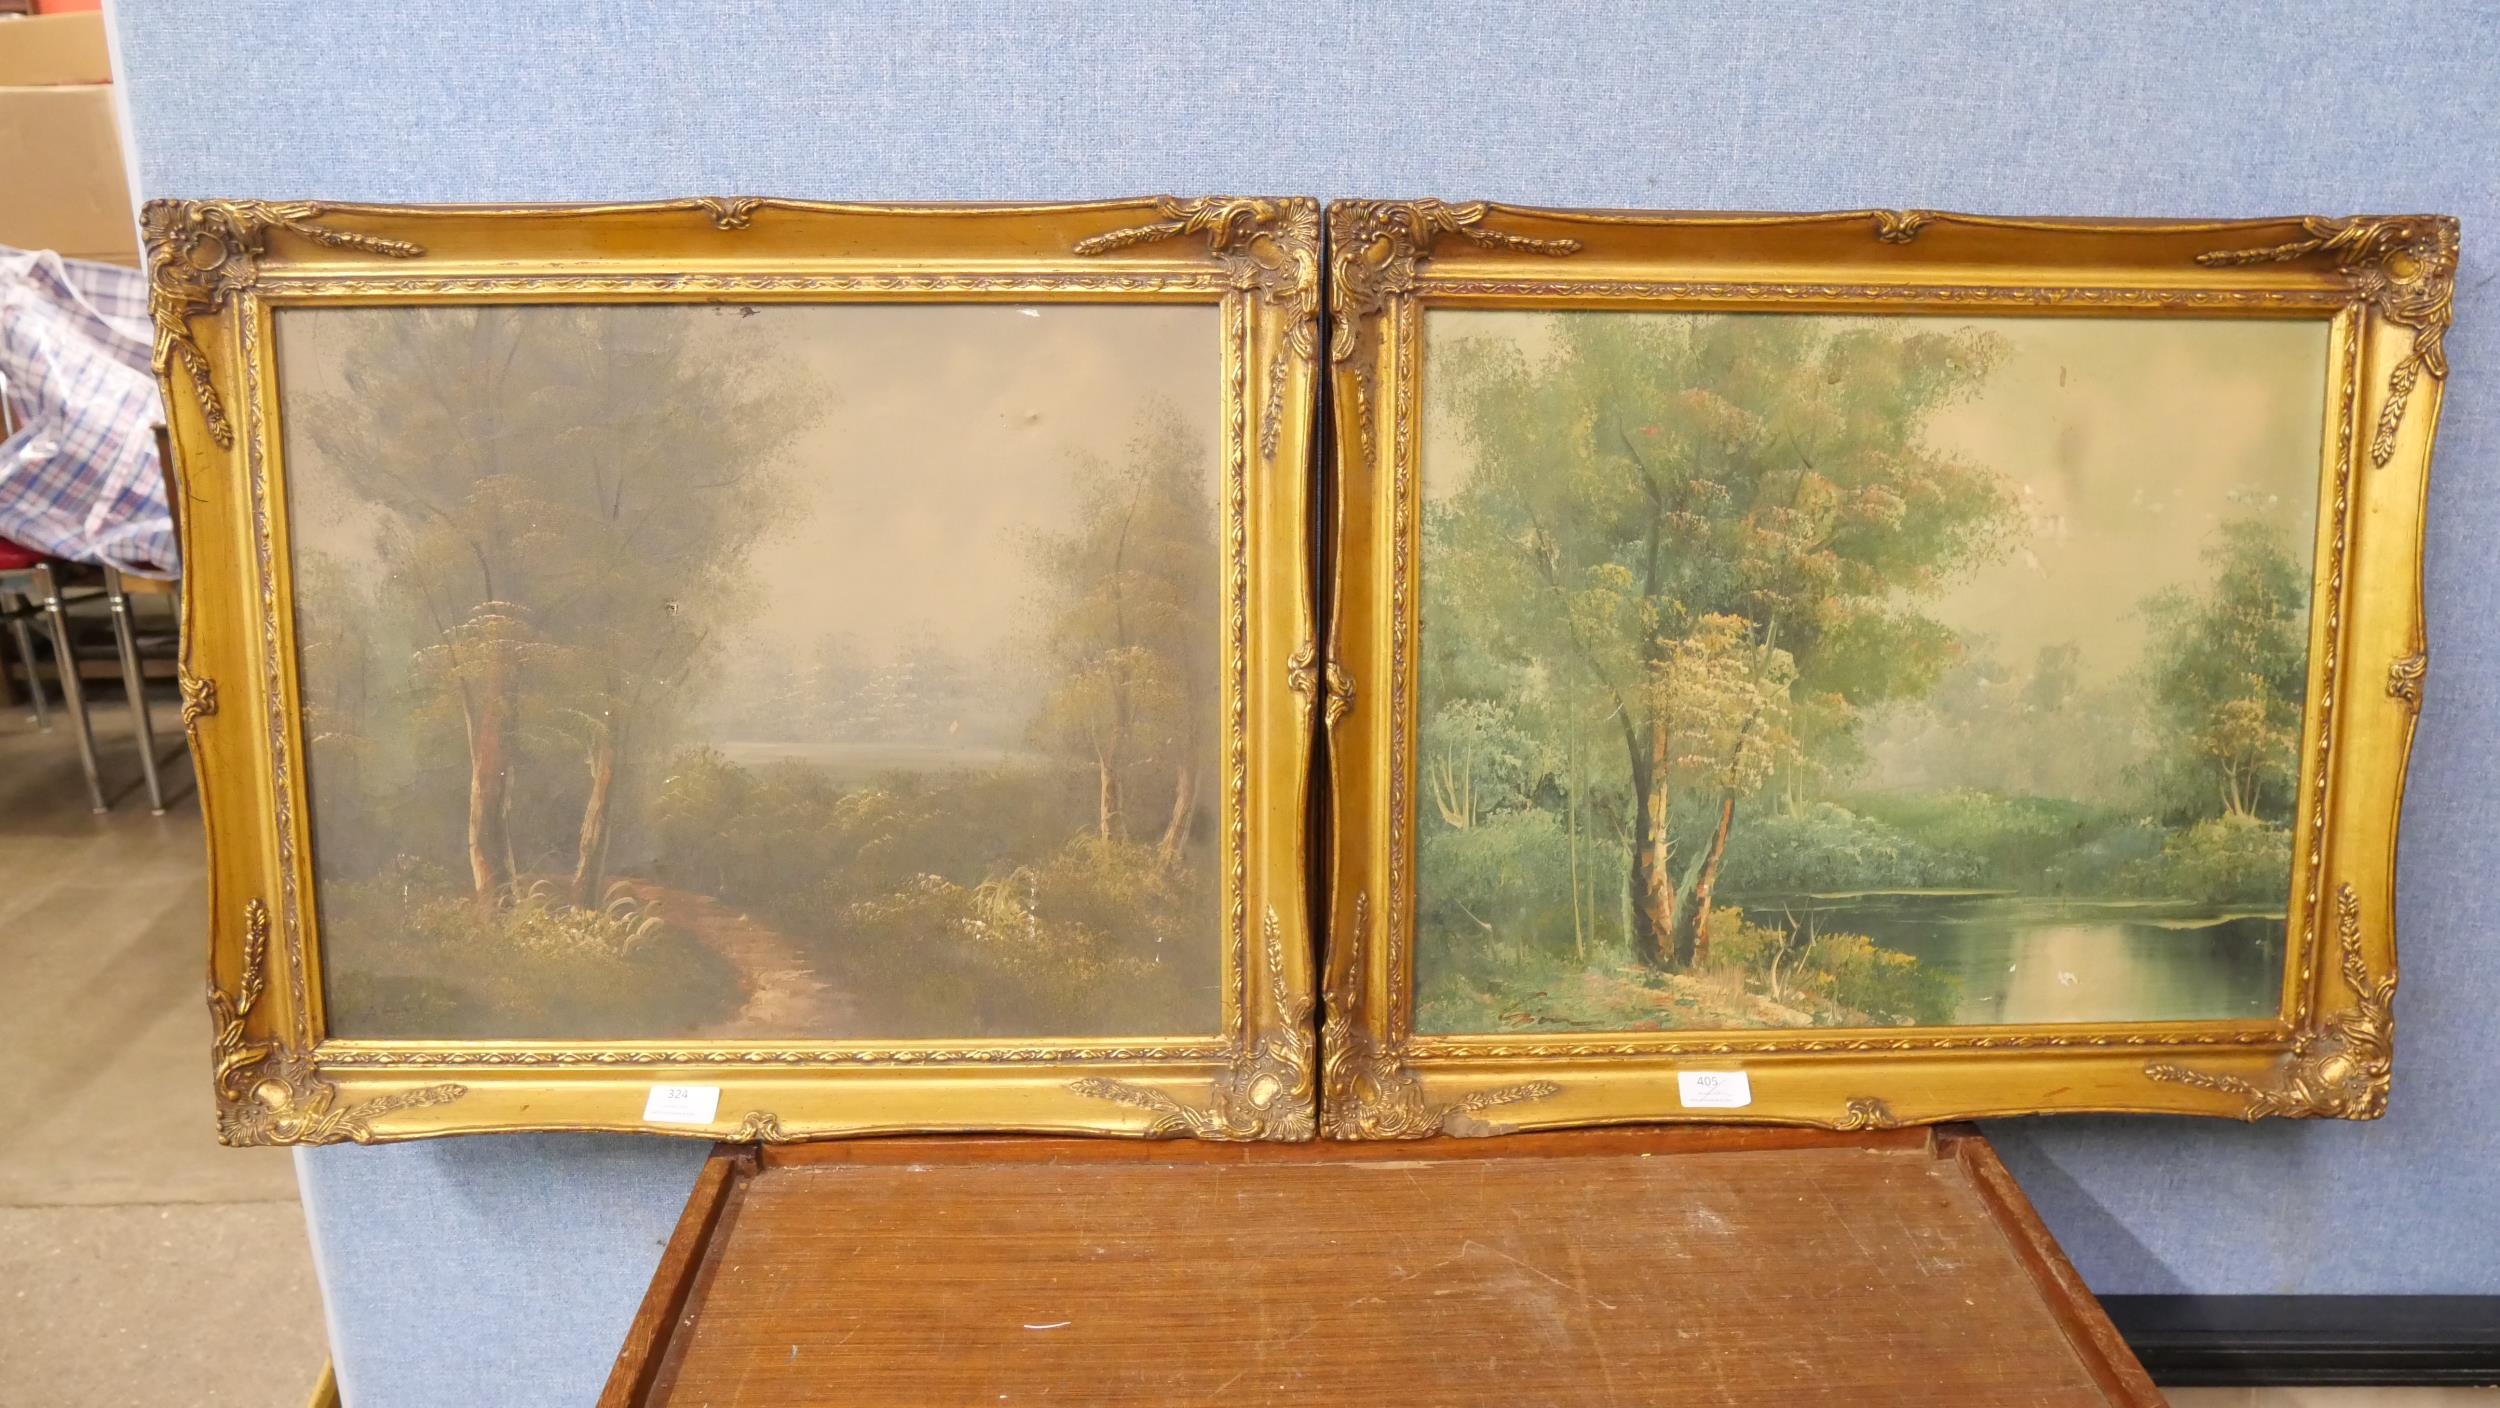 Two rural landscapes, oils on canvas, framed - Image 2 of 4